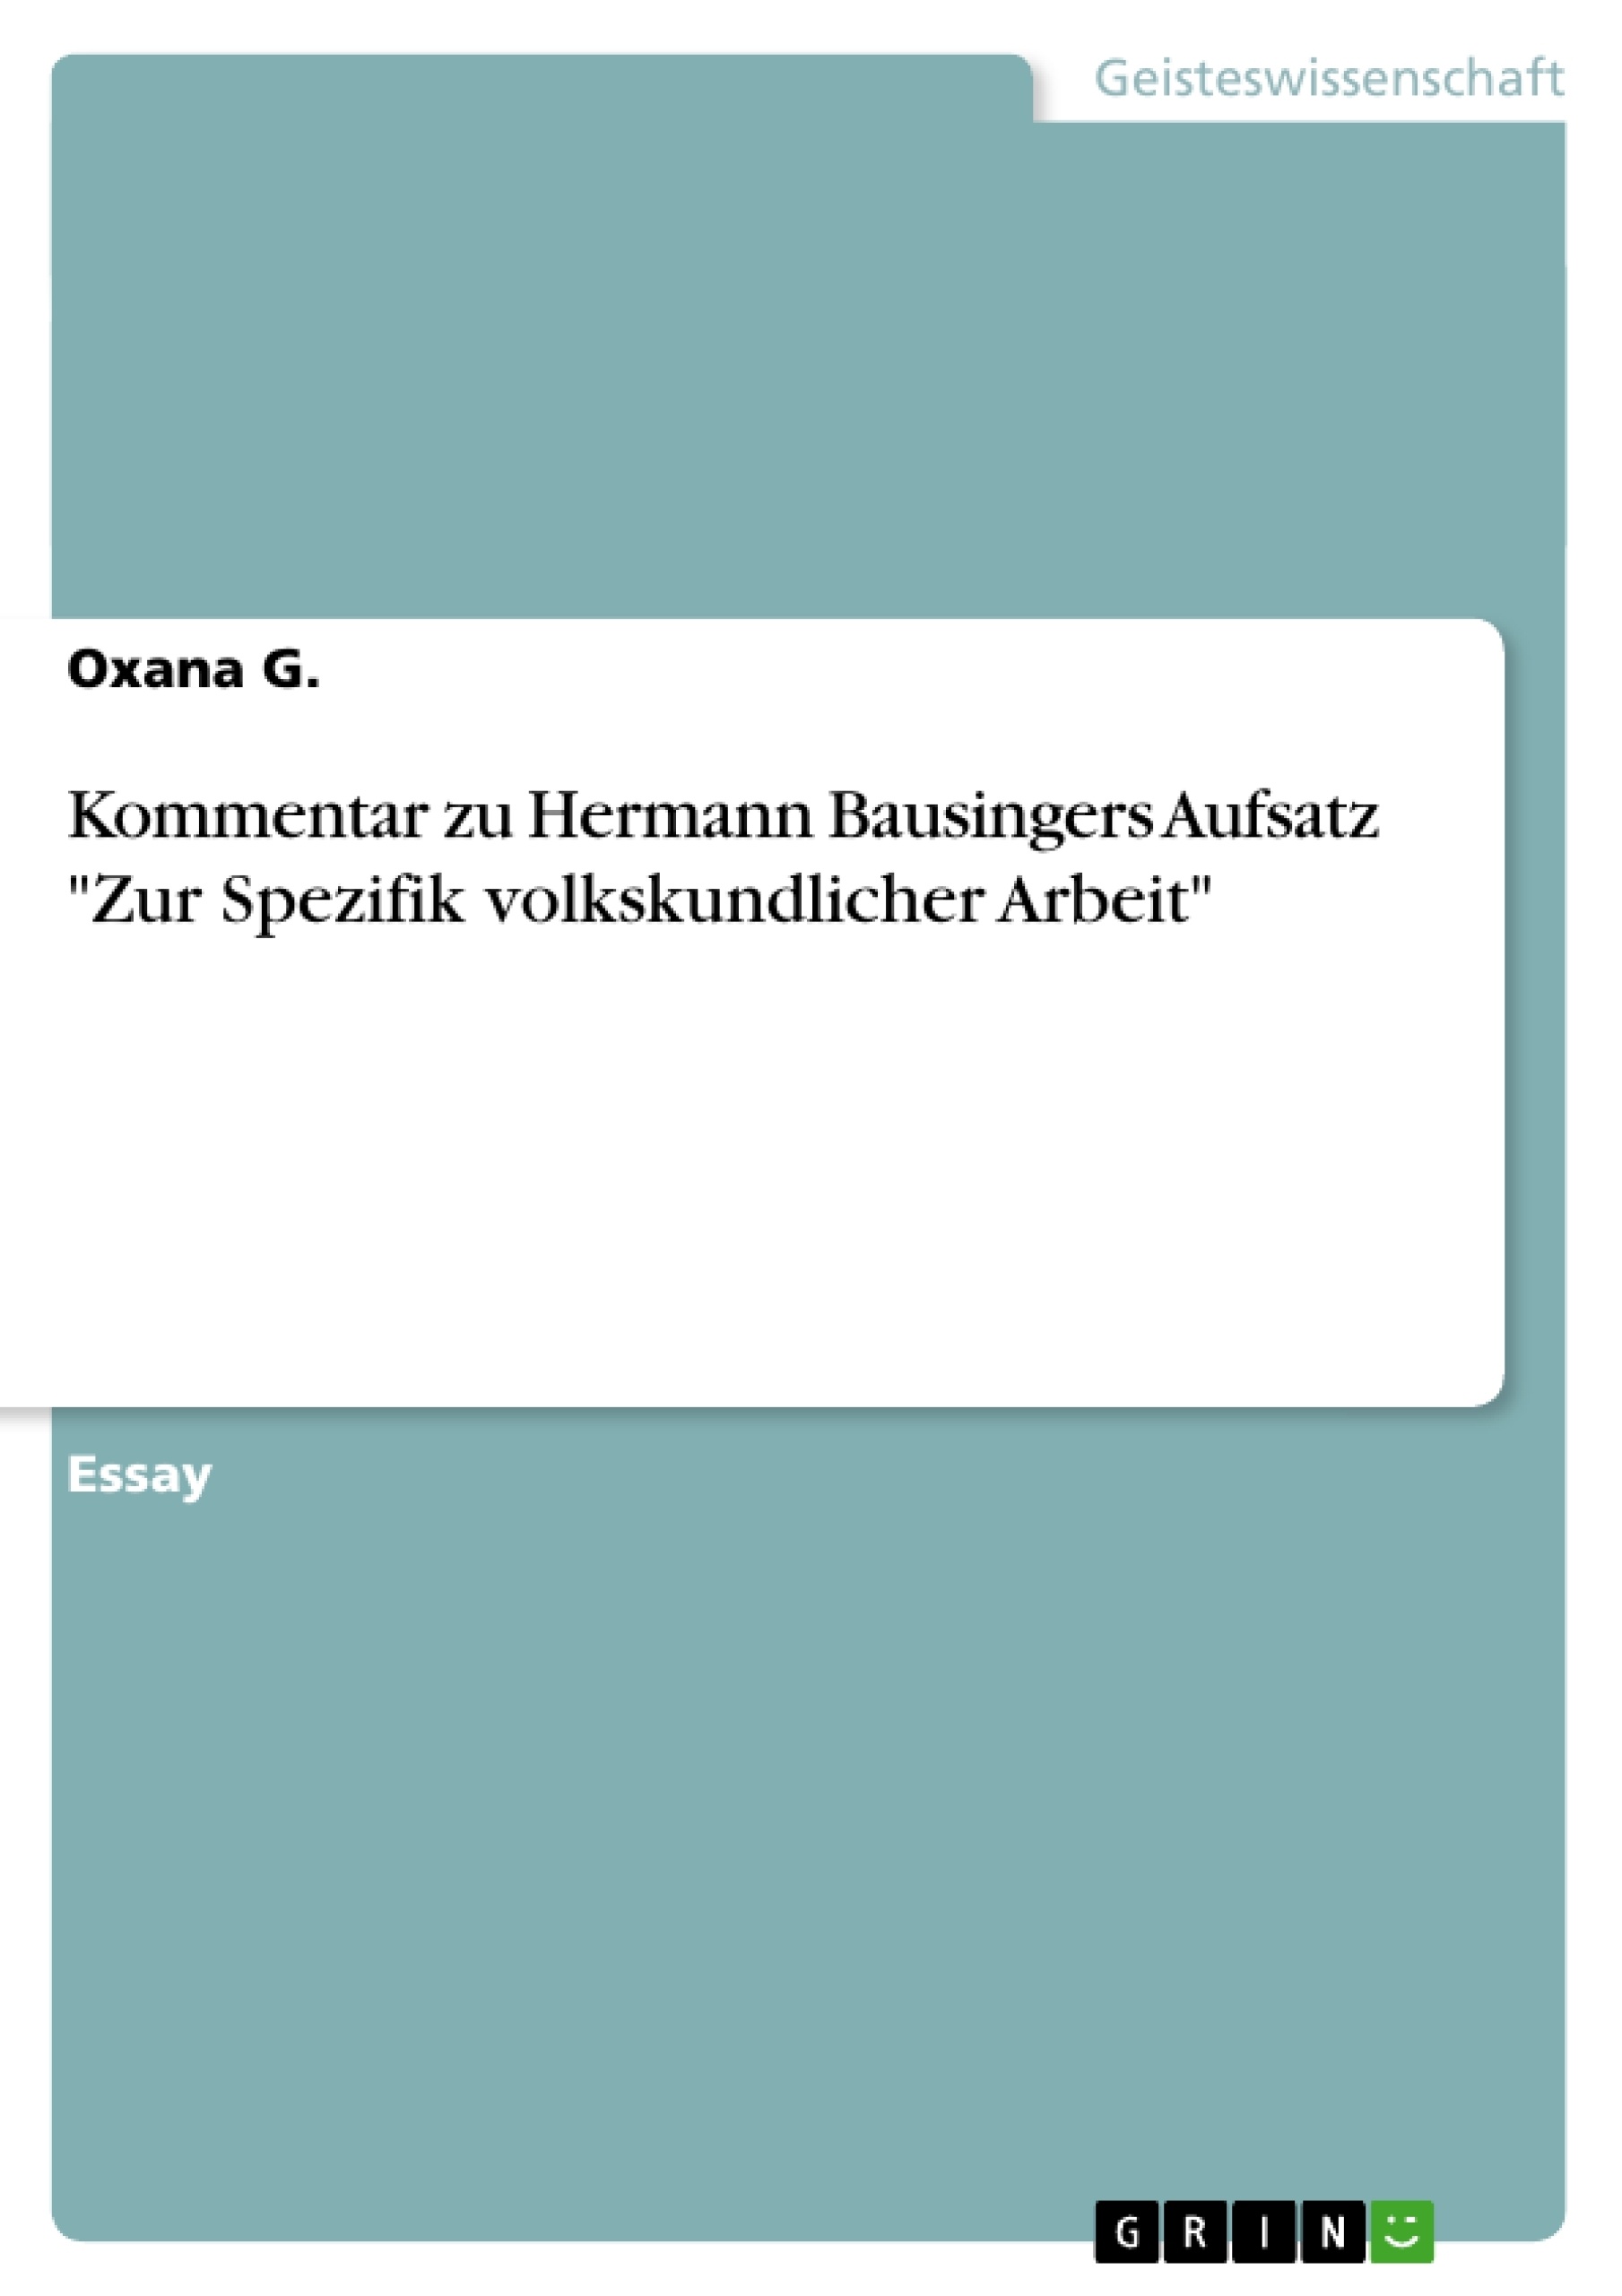 Title: Kommentar zu Hermann Bausingers Aufsatz "Zur Spezifik volkskundlicher Arbeit"